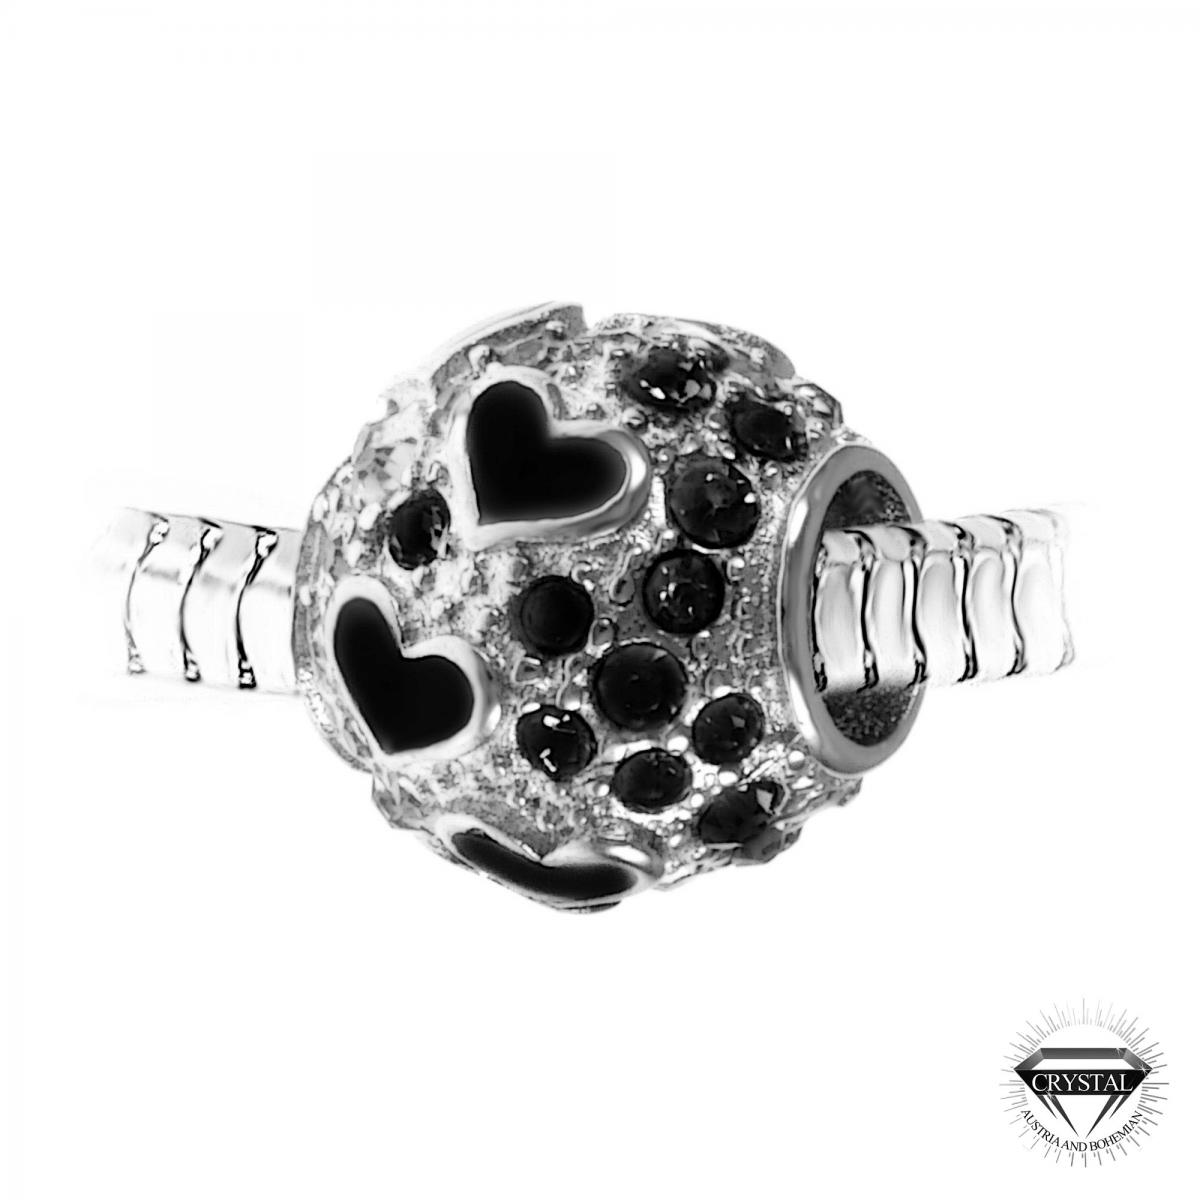 Promo : Charm perle orné de cristaux de Bohème par SC Crystal BEA0209-NOIR